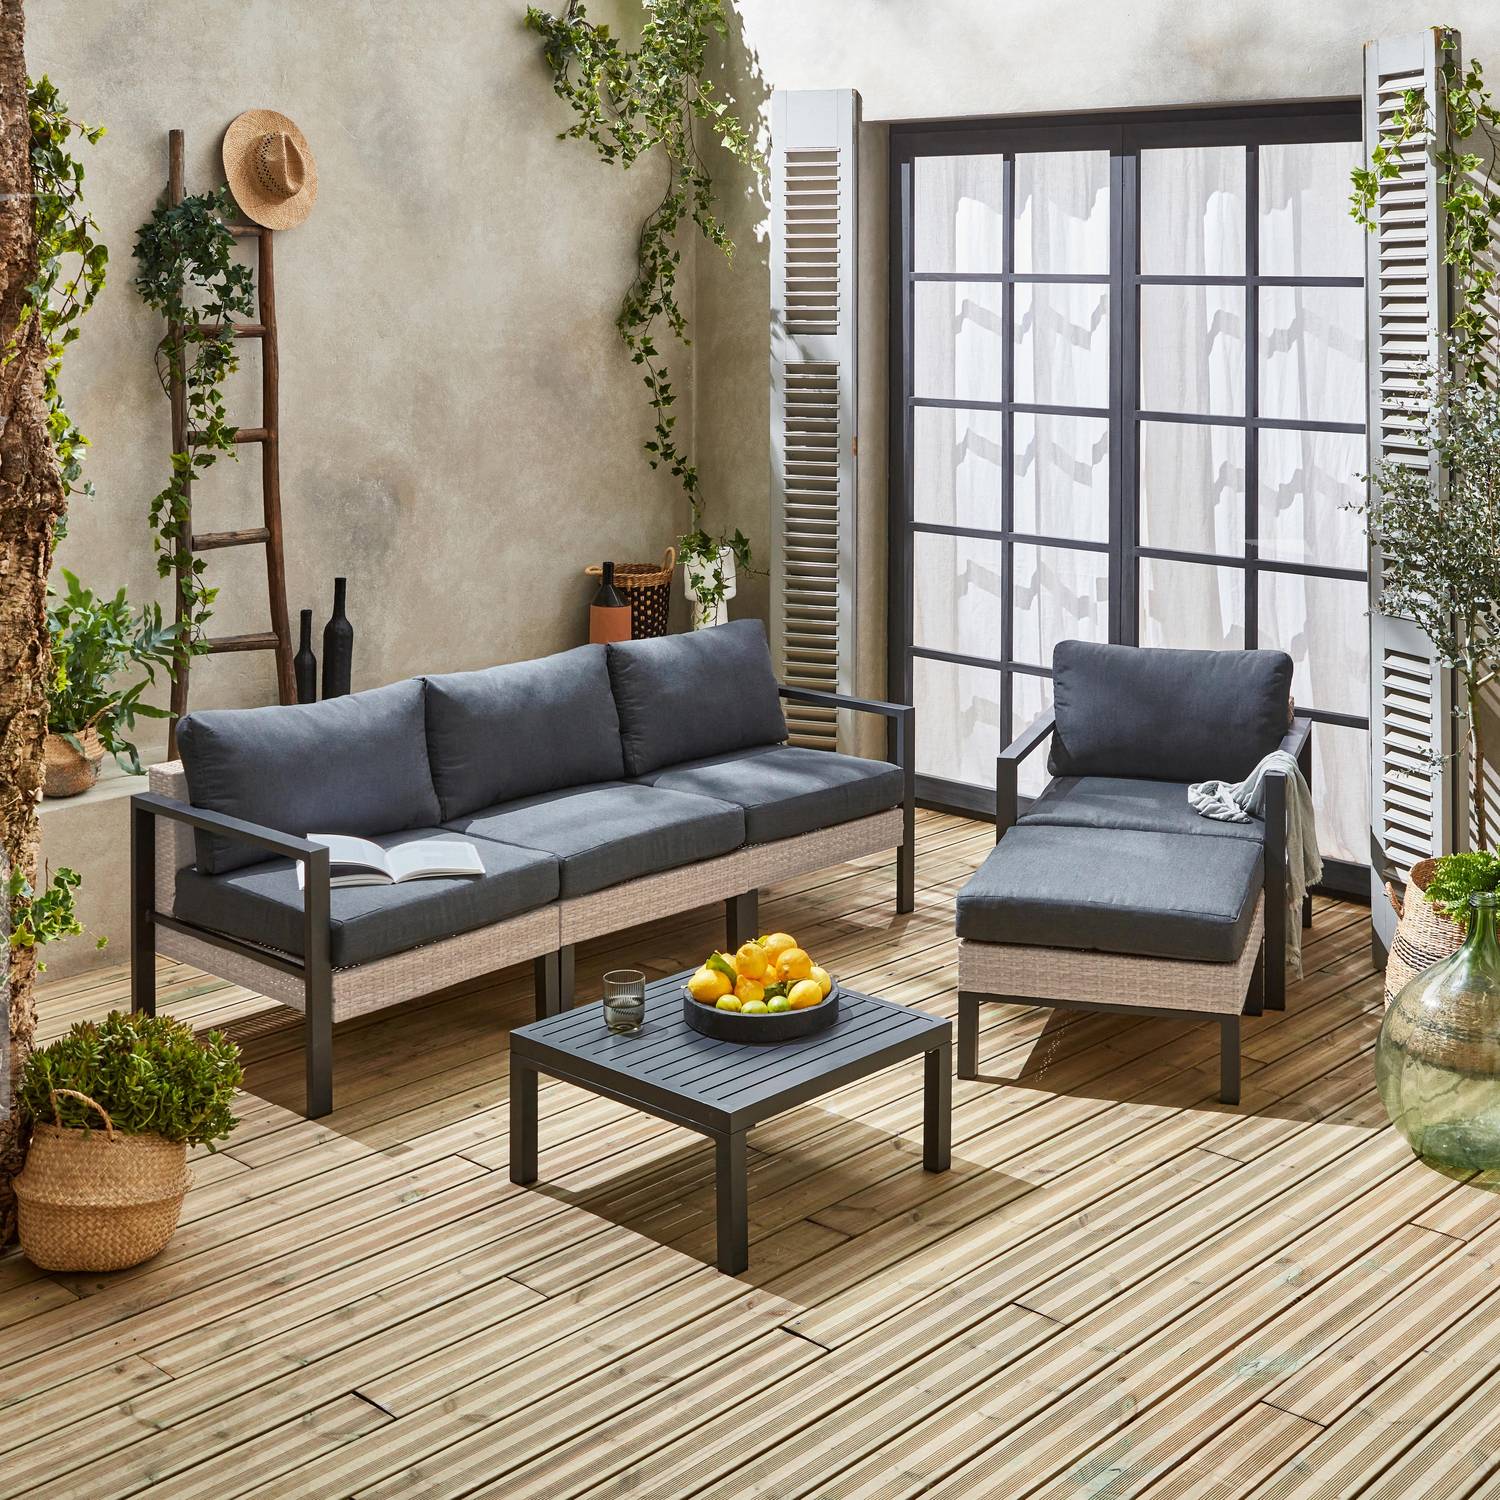 Set di mobili da giardino VELLETRI, grigio scuro, alluminio, resina intrecciata, 5 posti L68 x P74 x H63/76cm Photo4